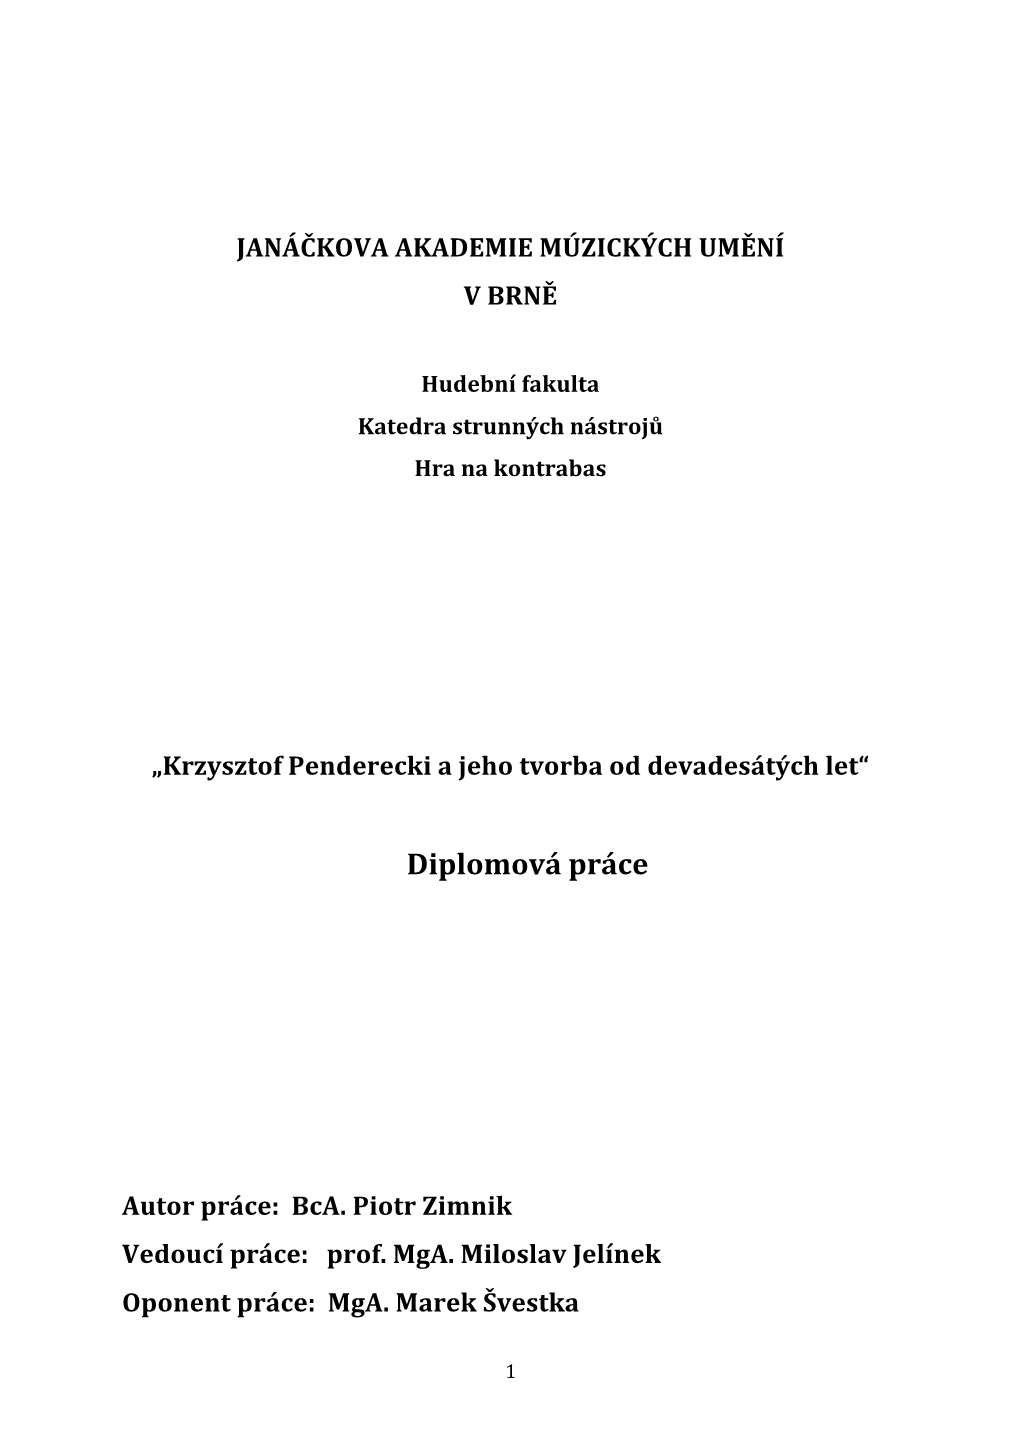 Krzysztof Penderecki a Jeho Tvorba Od Devadesátých Let“